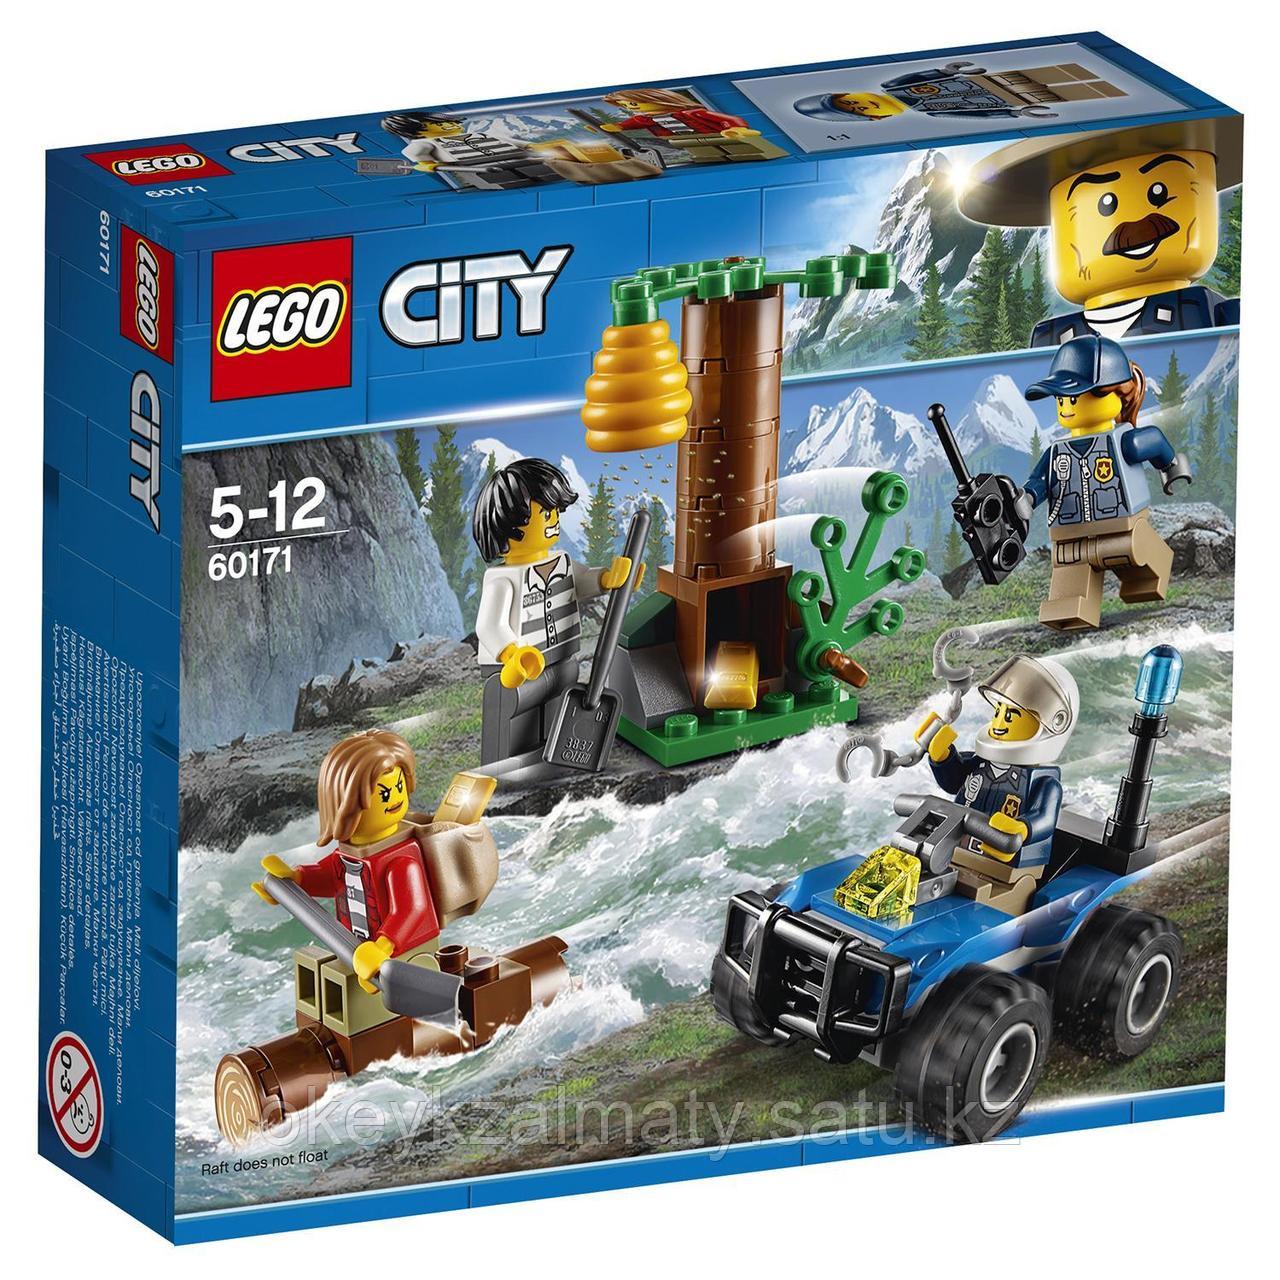 LEGO City: Убежище в горах 60171